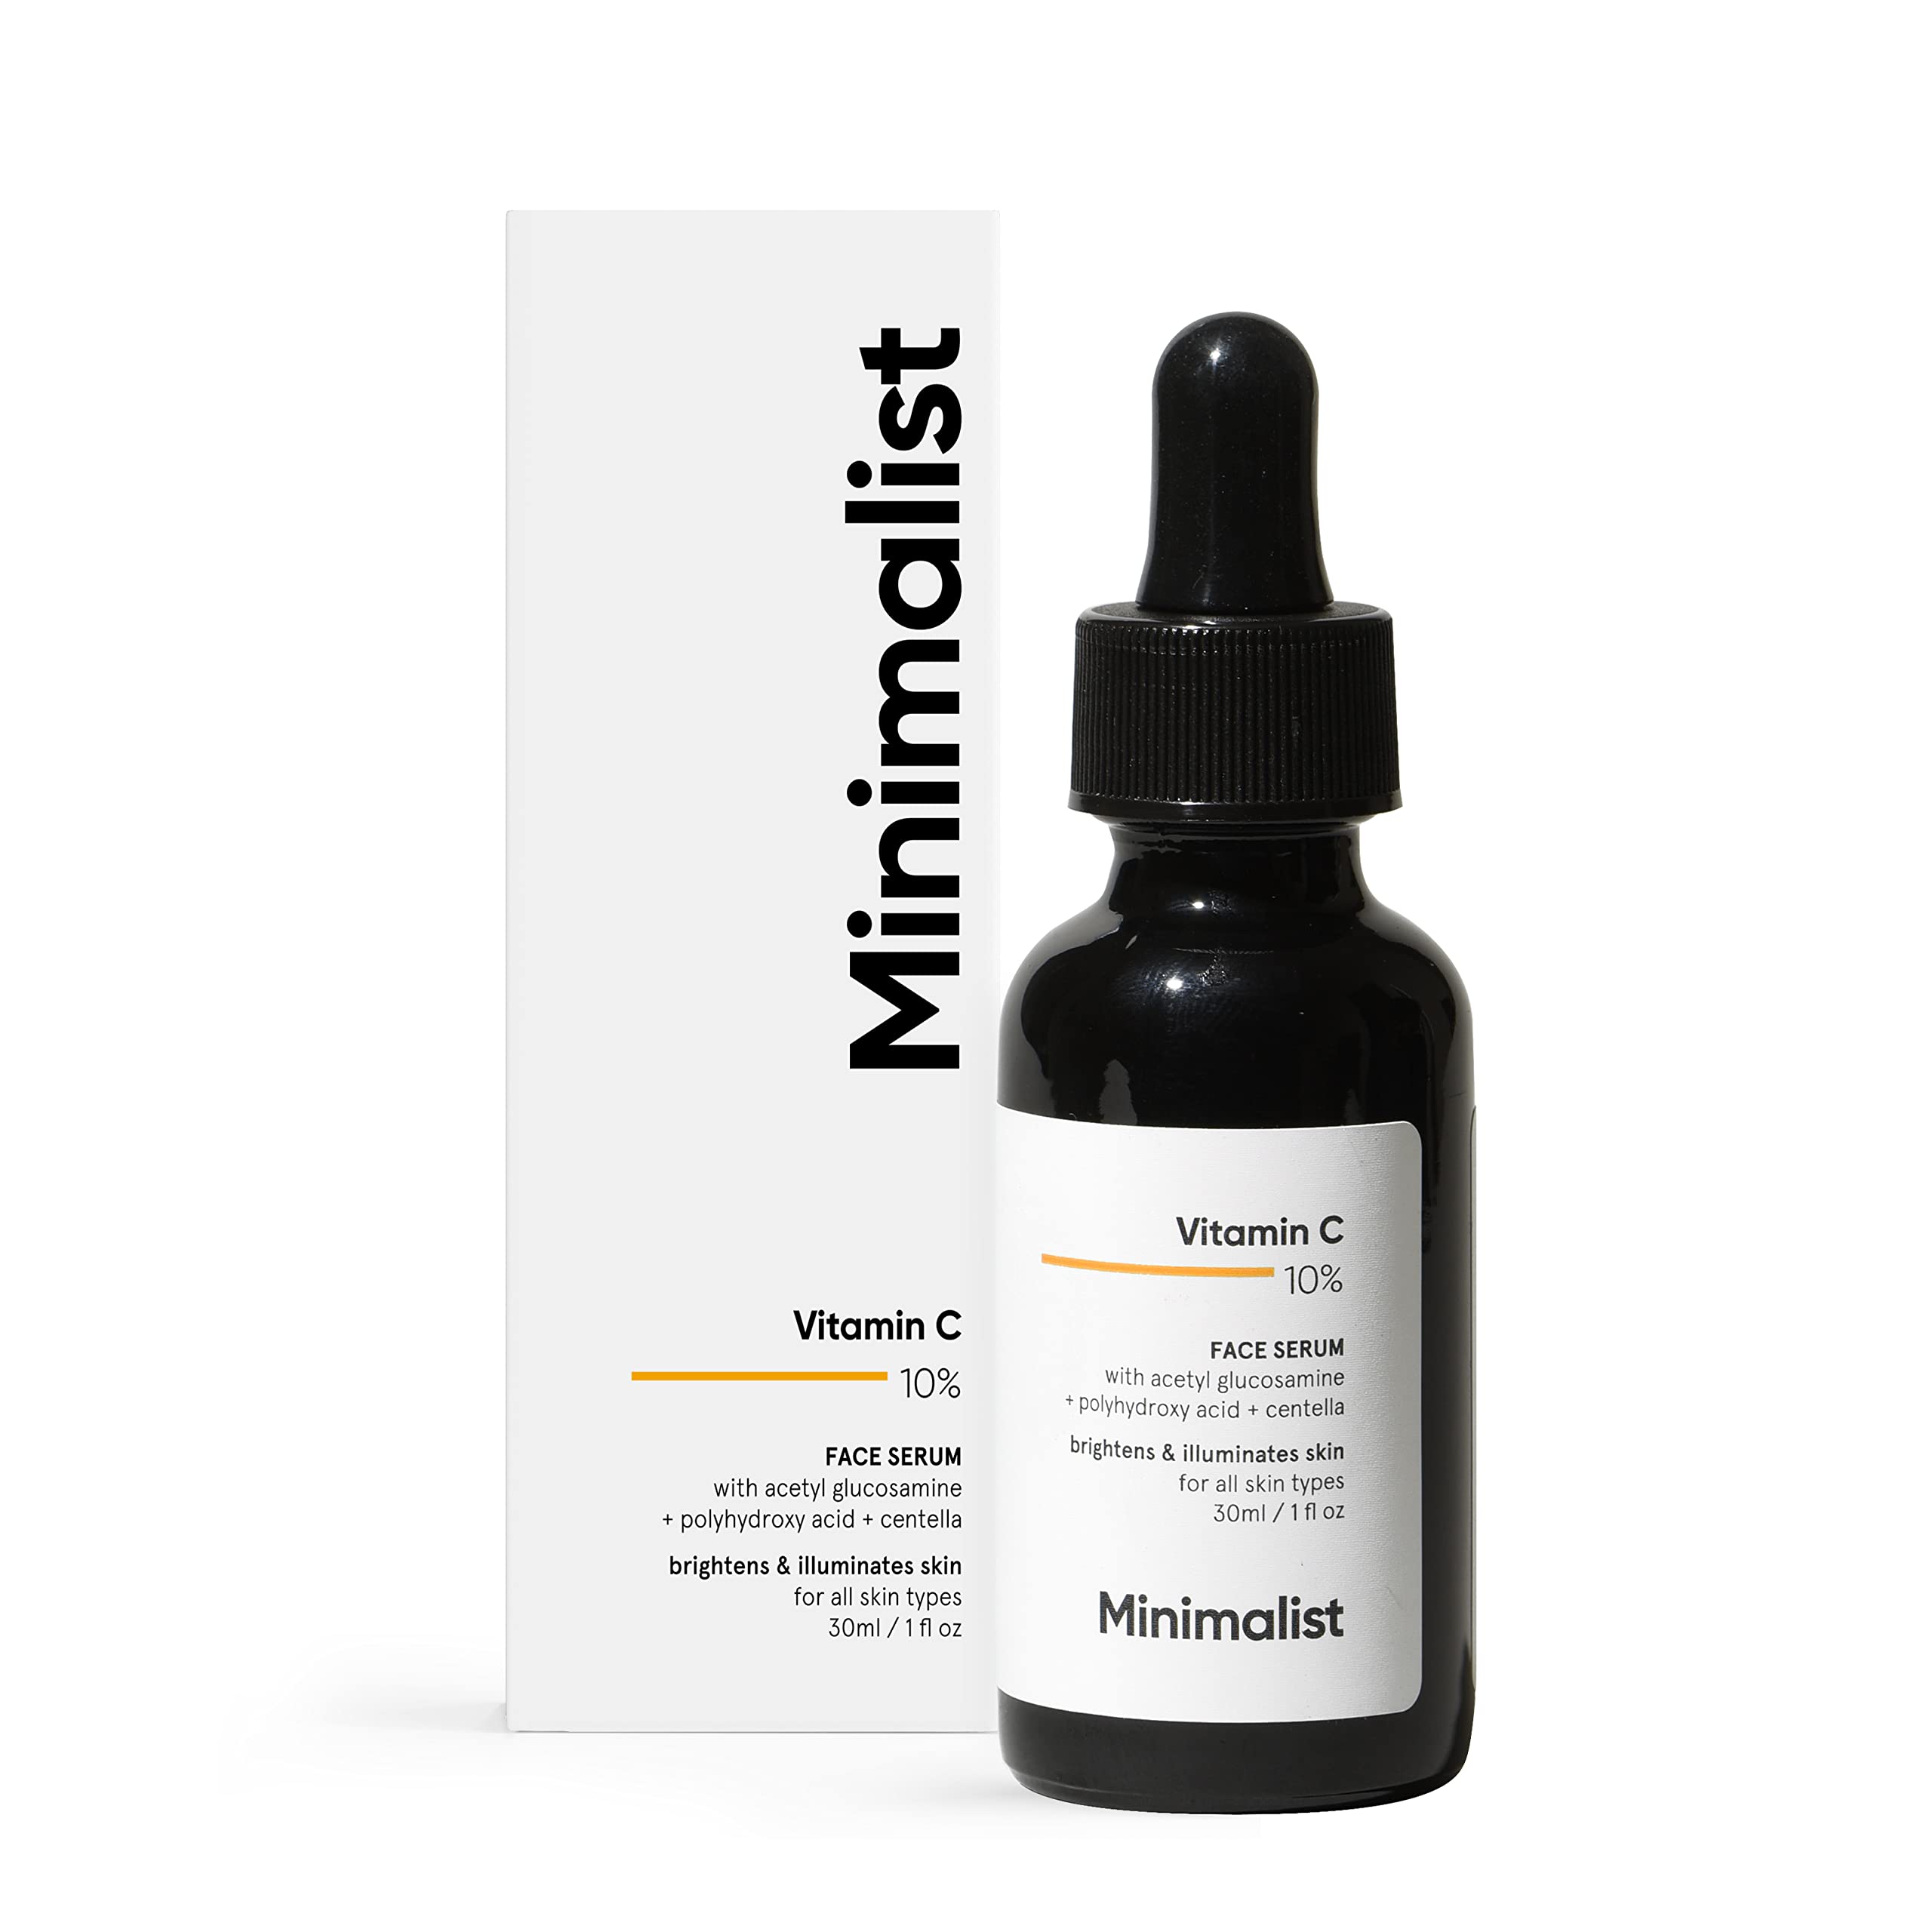 Minimalist serum